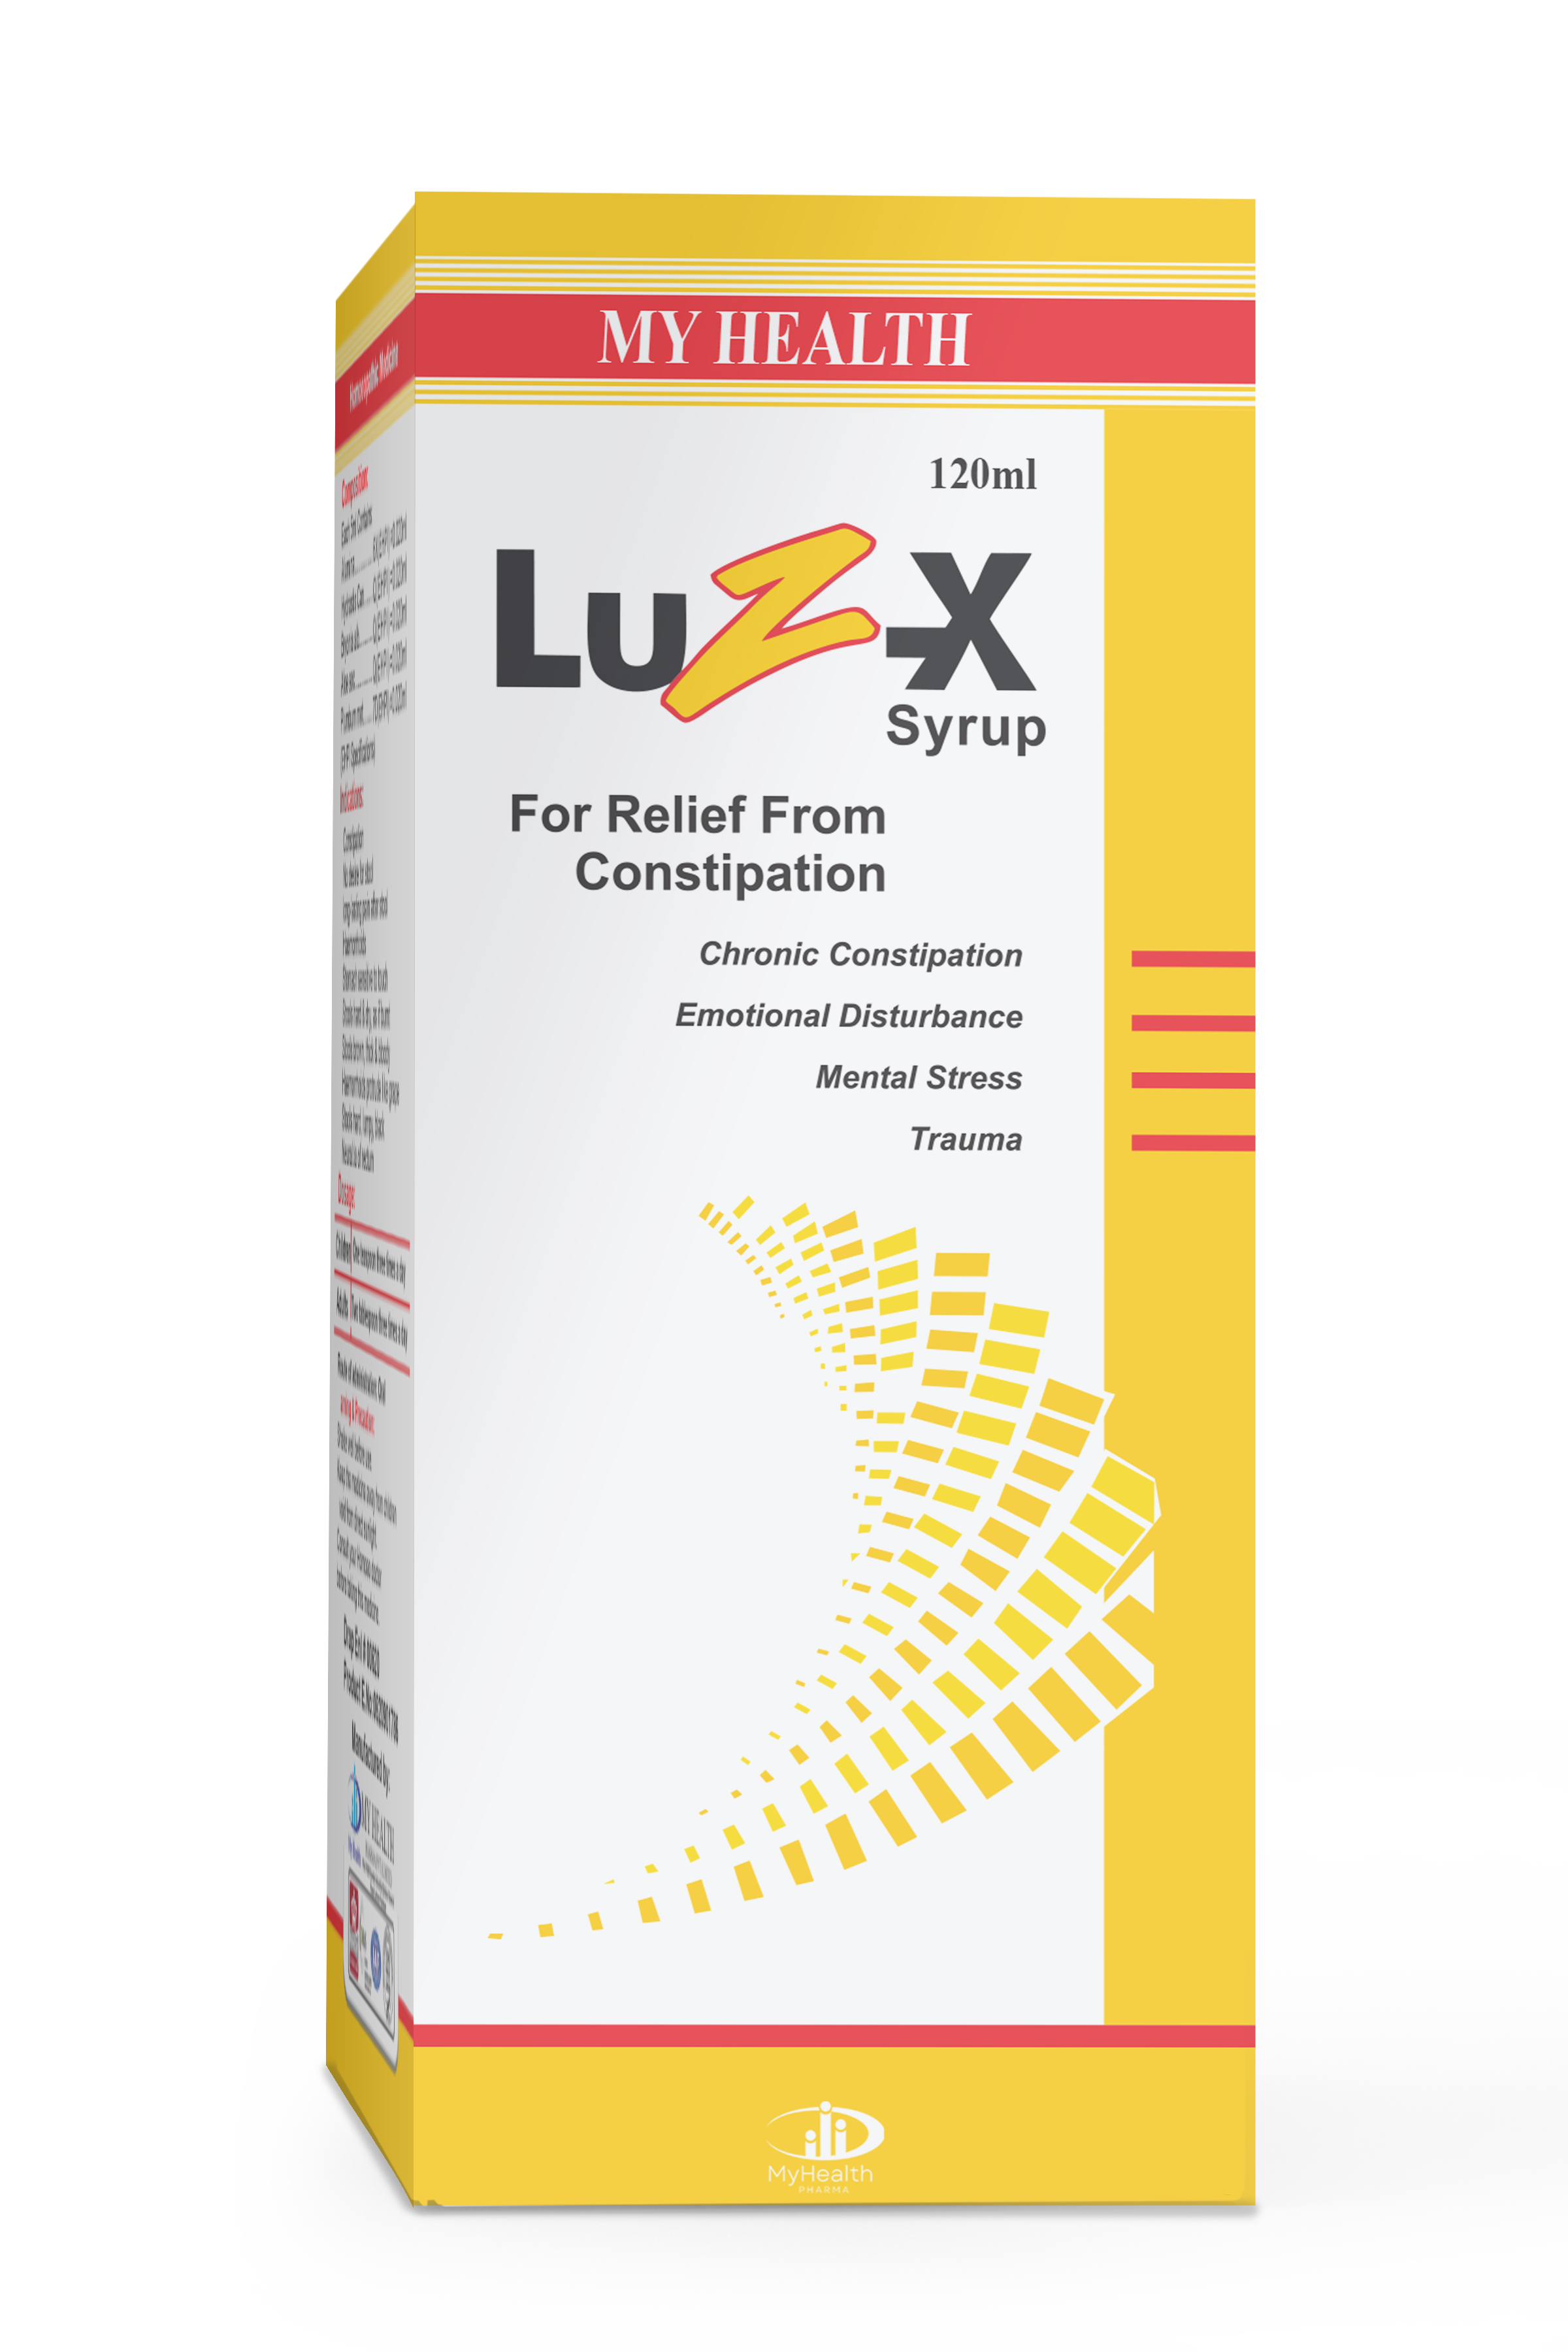 LUZ-X Syrup